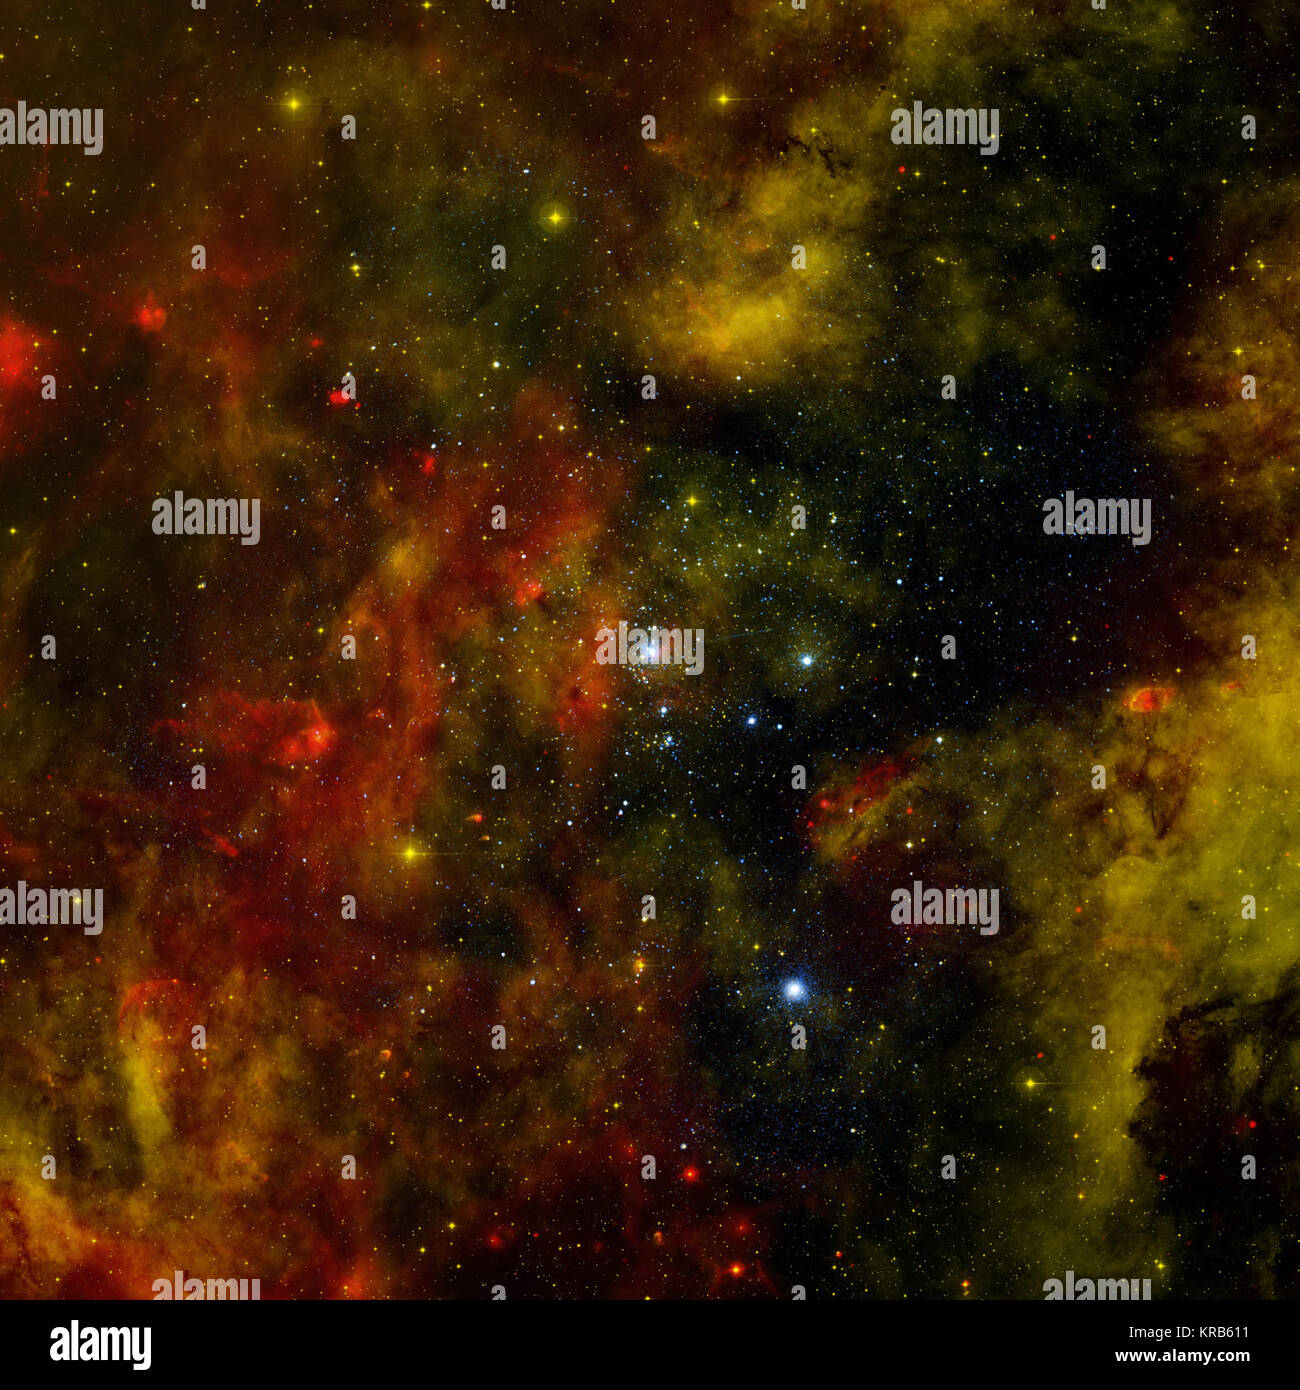 Die Milchstraße und andere Galaxien im Universum Hafen viele junge Sternhaufen und Verbände, die jeweils hunderte bis tausende von heißen, massive, junge Stars wie A- und B-Stars bekannt. Der Sternhaufen Cygnus OB2 enthält mehr als 60 O-Typ Sterne und über Tausend B-Typ Sterne. Tiefen Beobachtungen mit der NASA Chandra X-ray Observatory sind benutzt worden, die X-ray Emission von den heißen äußeren Atmosphären, oder coronas, junger Sterne im Cluster zu erkennen und zu untersuchen, wie diese faszinierenden star Fabriken entstehen und sich entwickeln. Über 1.700 Röntgenquellen entdeckt wurden, darunter rund 1.450 dachte Stockfoto